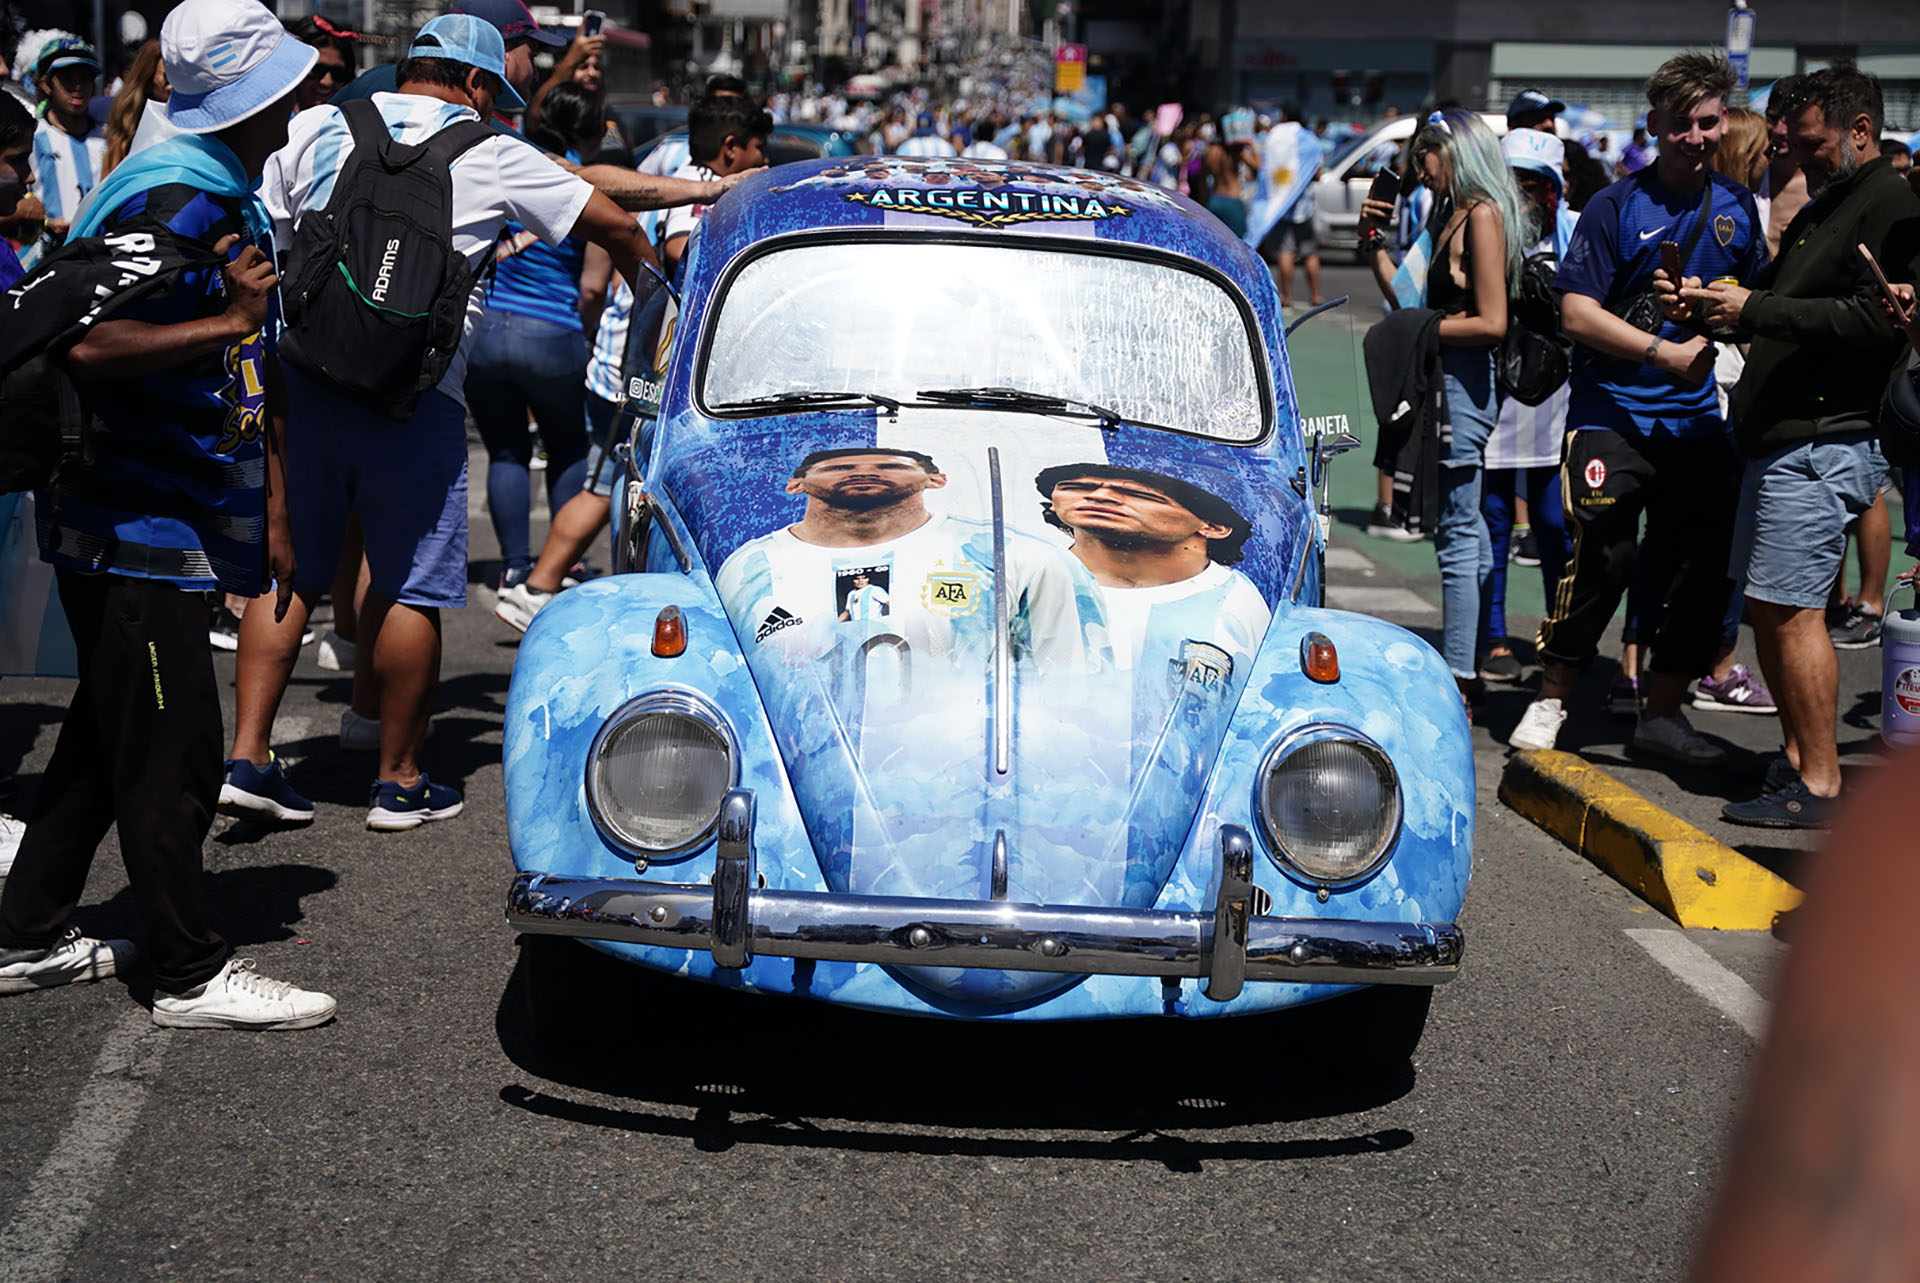 El Mundial da para cualquier locura, como plotear el auto con Messi y Maradona (Crédito: Franco Fafasuli)